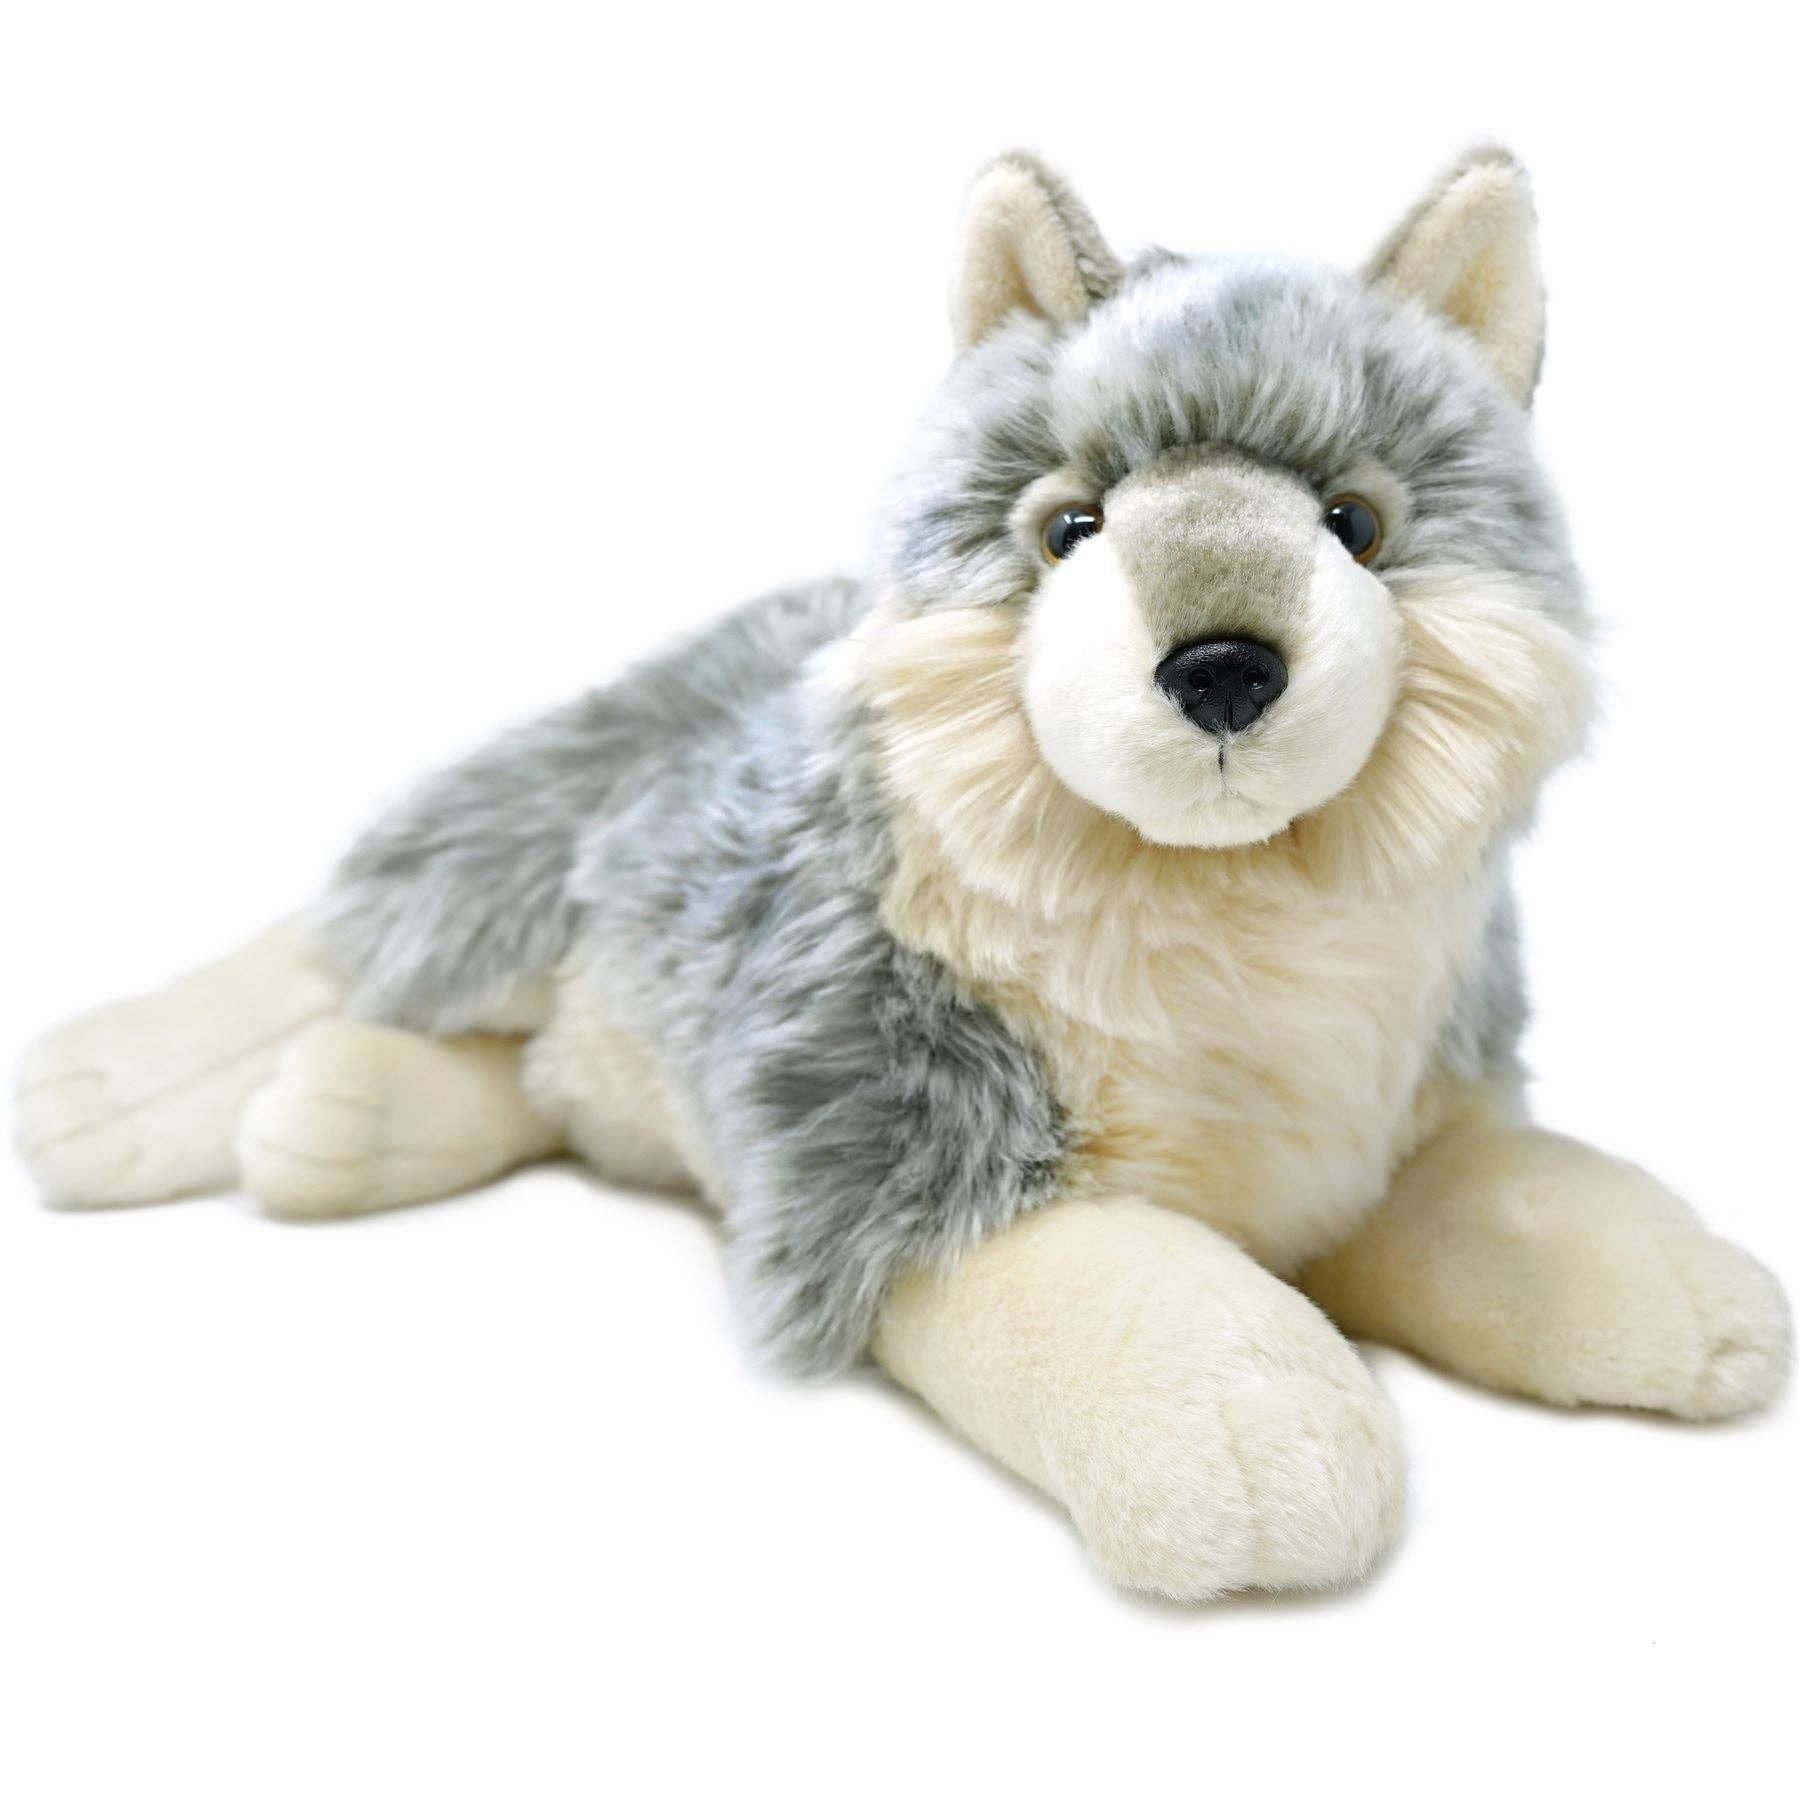 Whitaker The Wolf, 15 Inch Stuffed Animal Plush